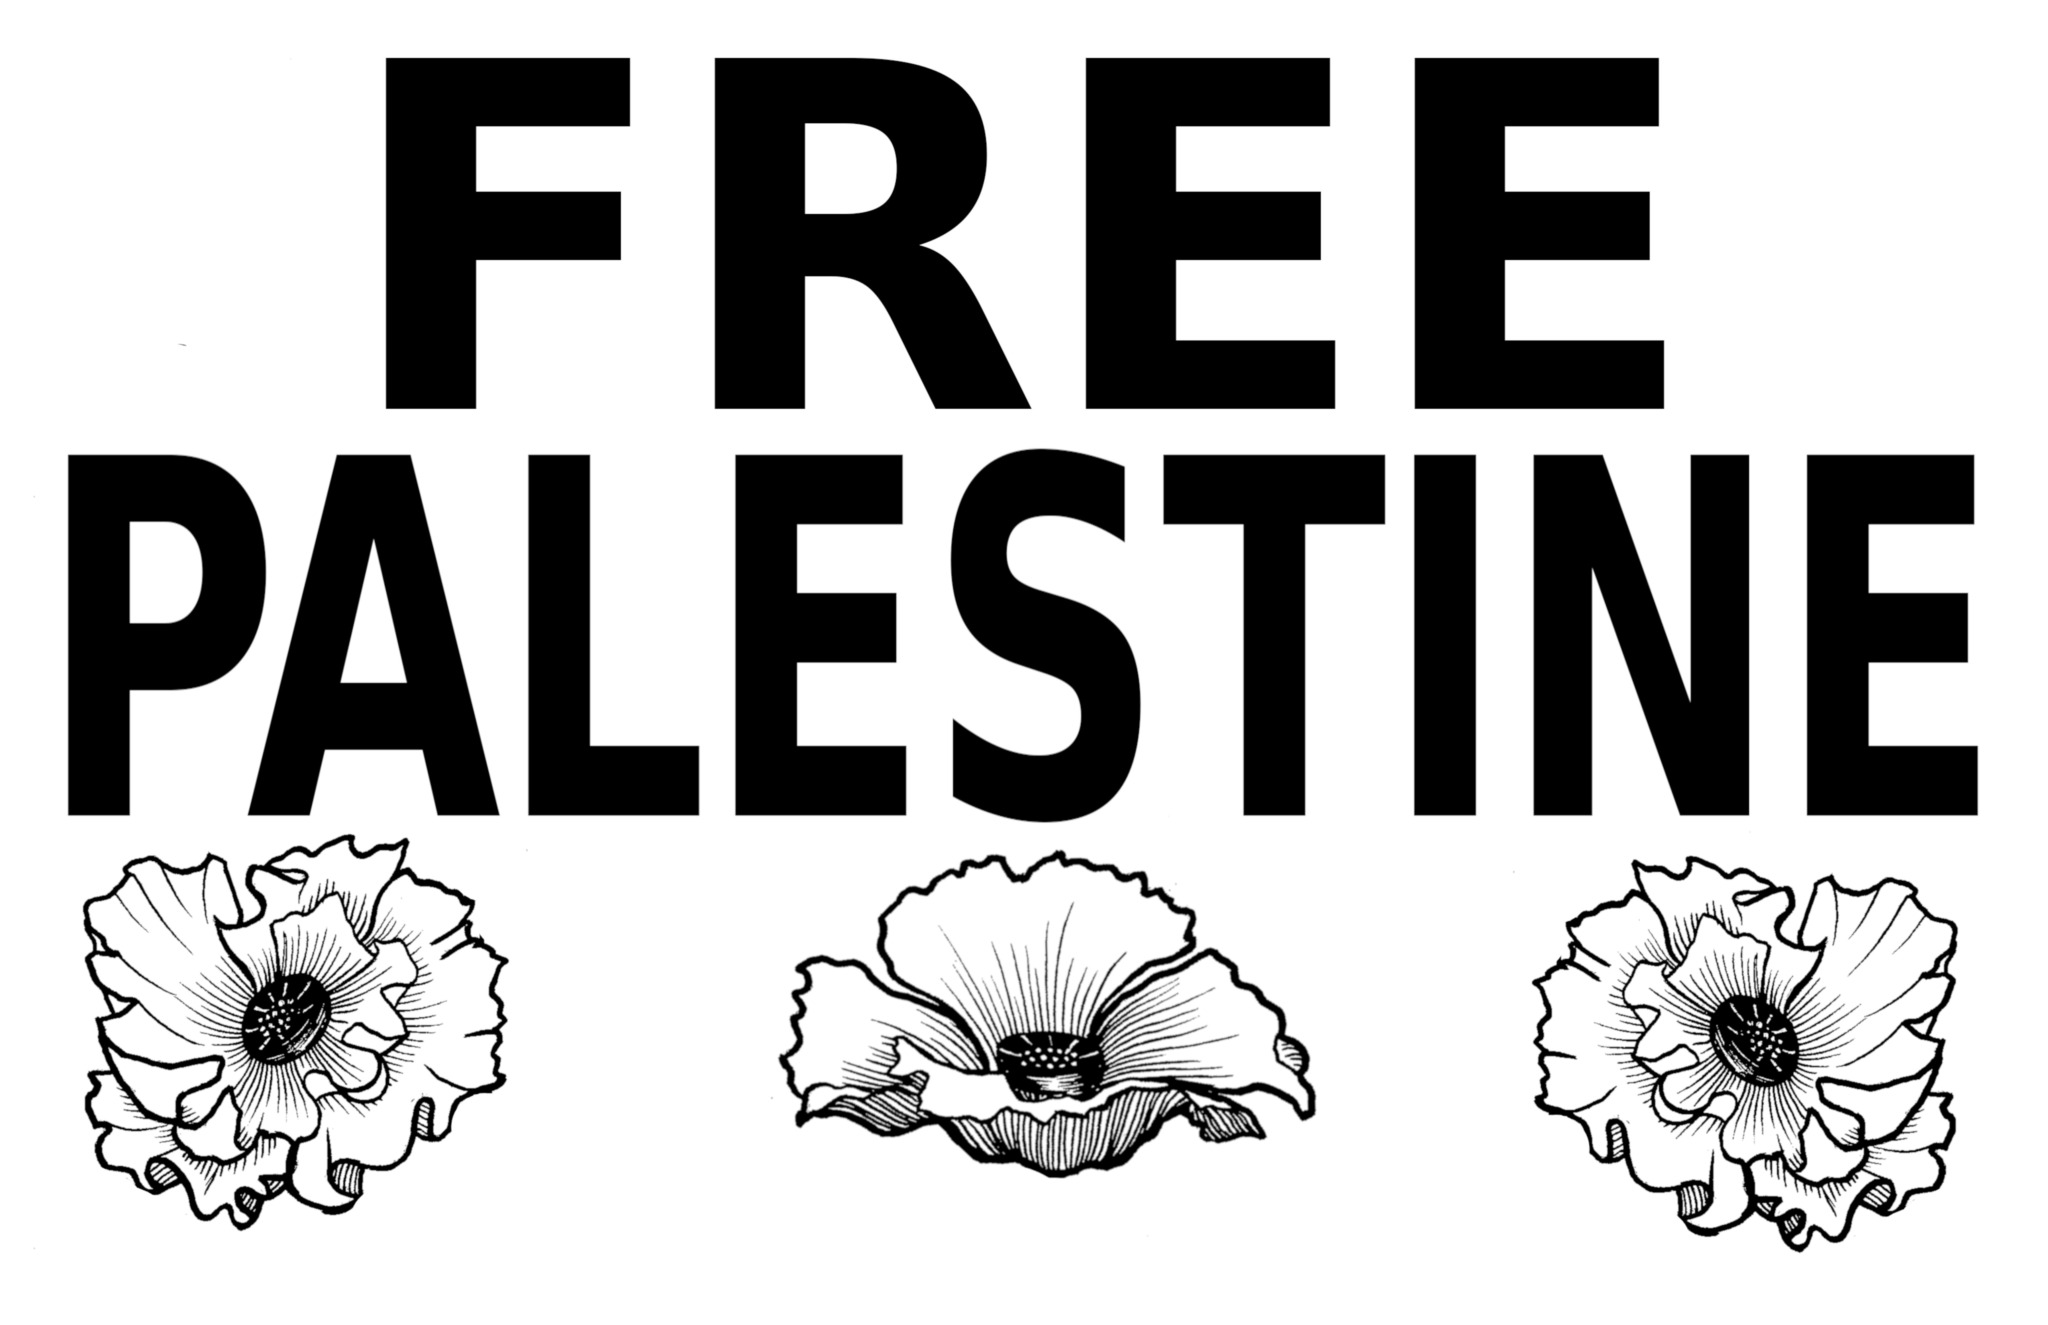 artzy Sticker Palestine - Free Palestine - PC - 13.9*13.2 - Rouge